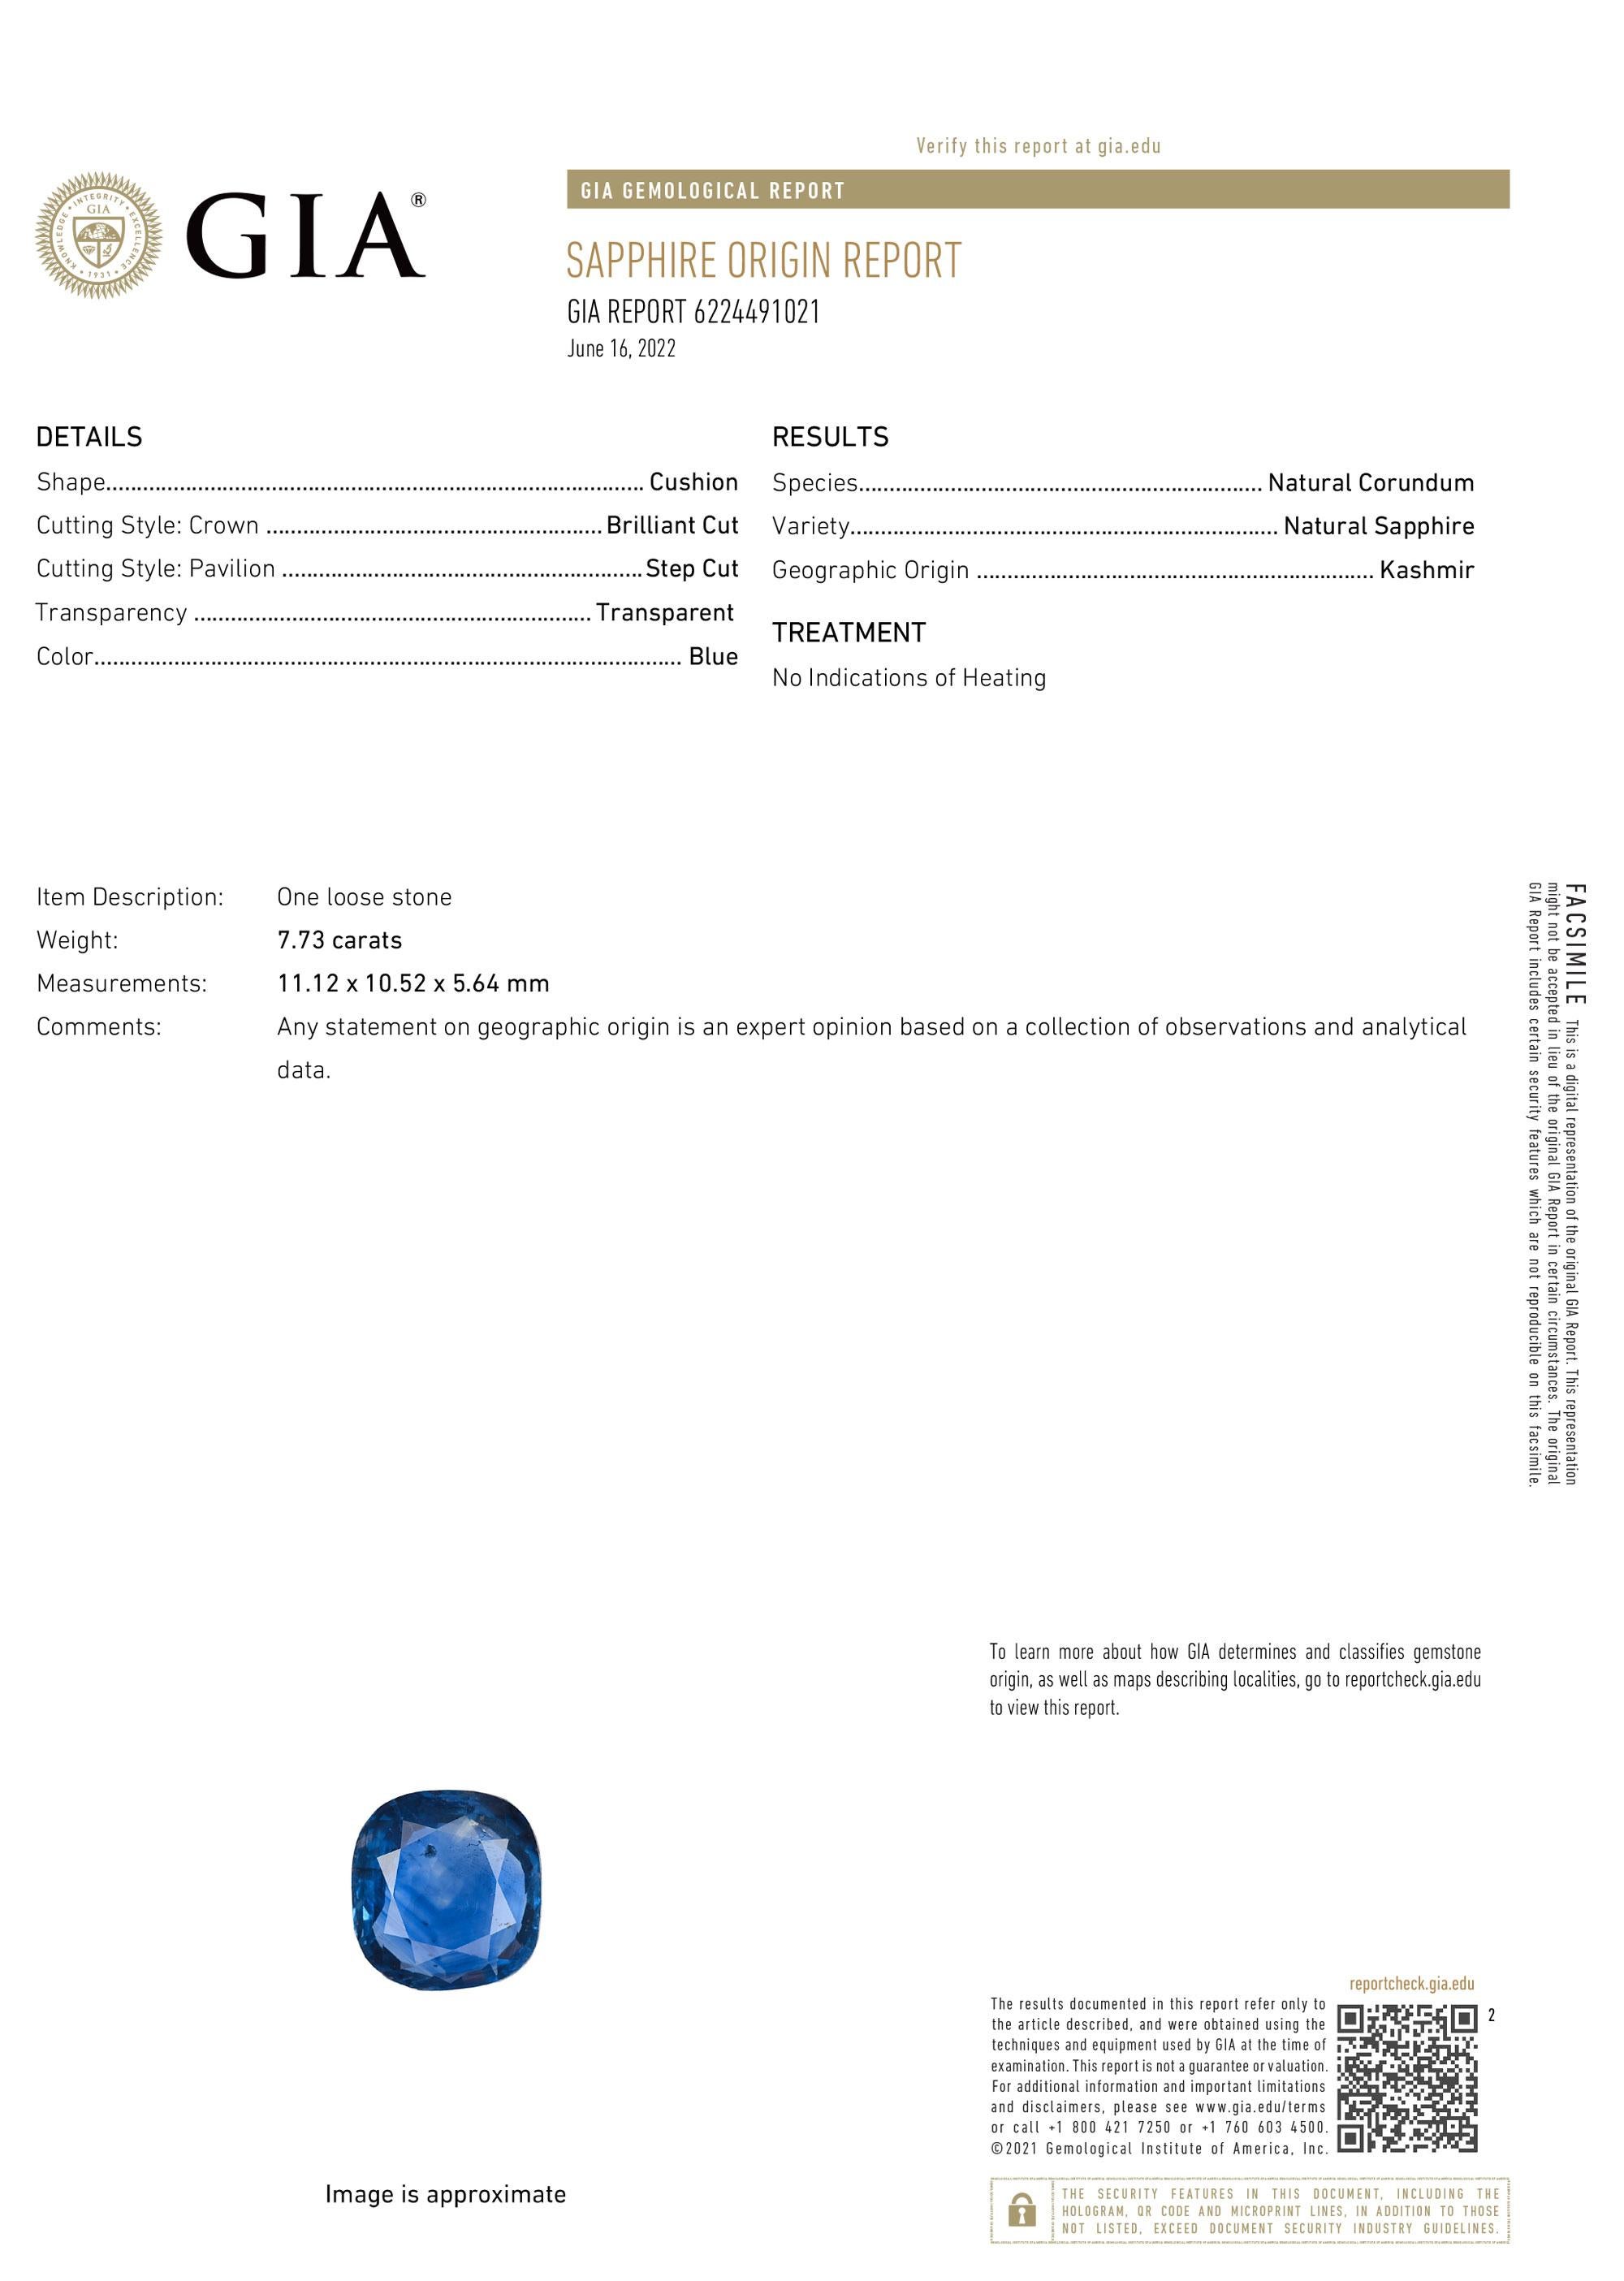 Cushion Cut GUBELIN GIA Certified 7 Carat Blue Sapphire KASHMIR NO HEAT Origin Ring For Sale